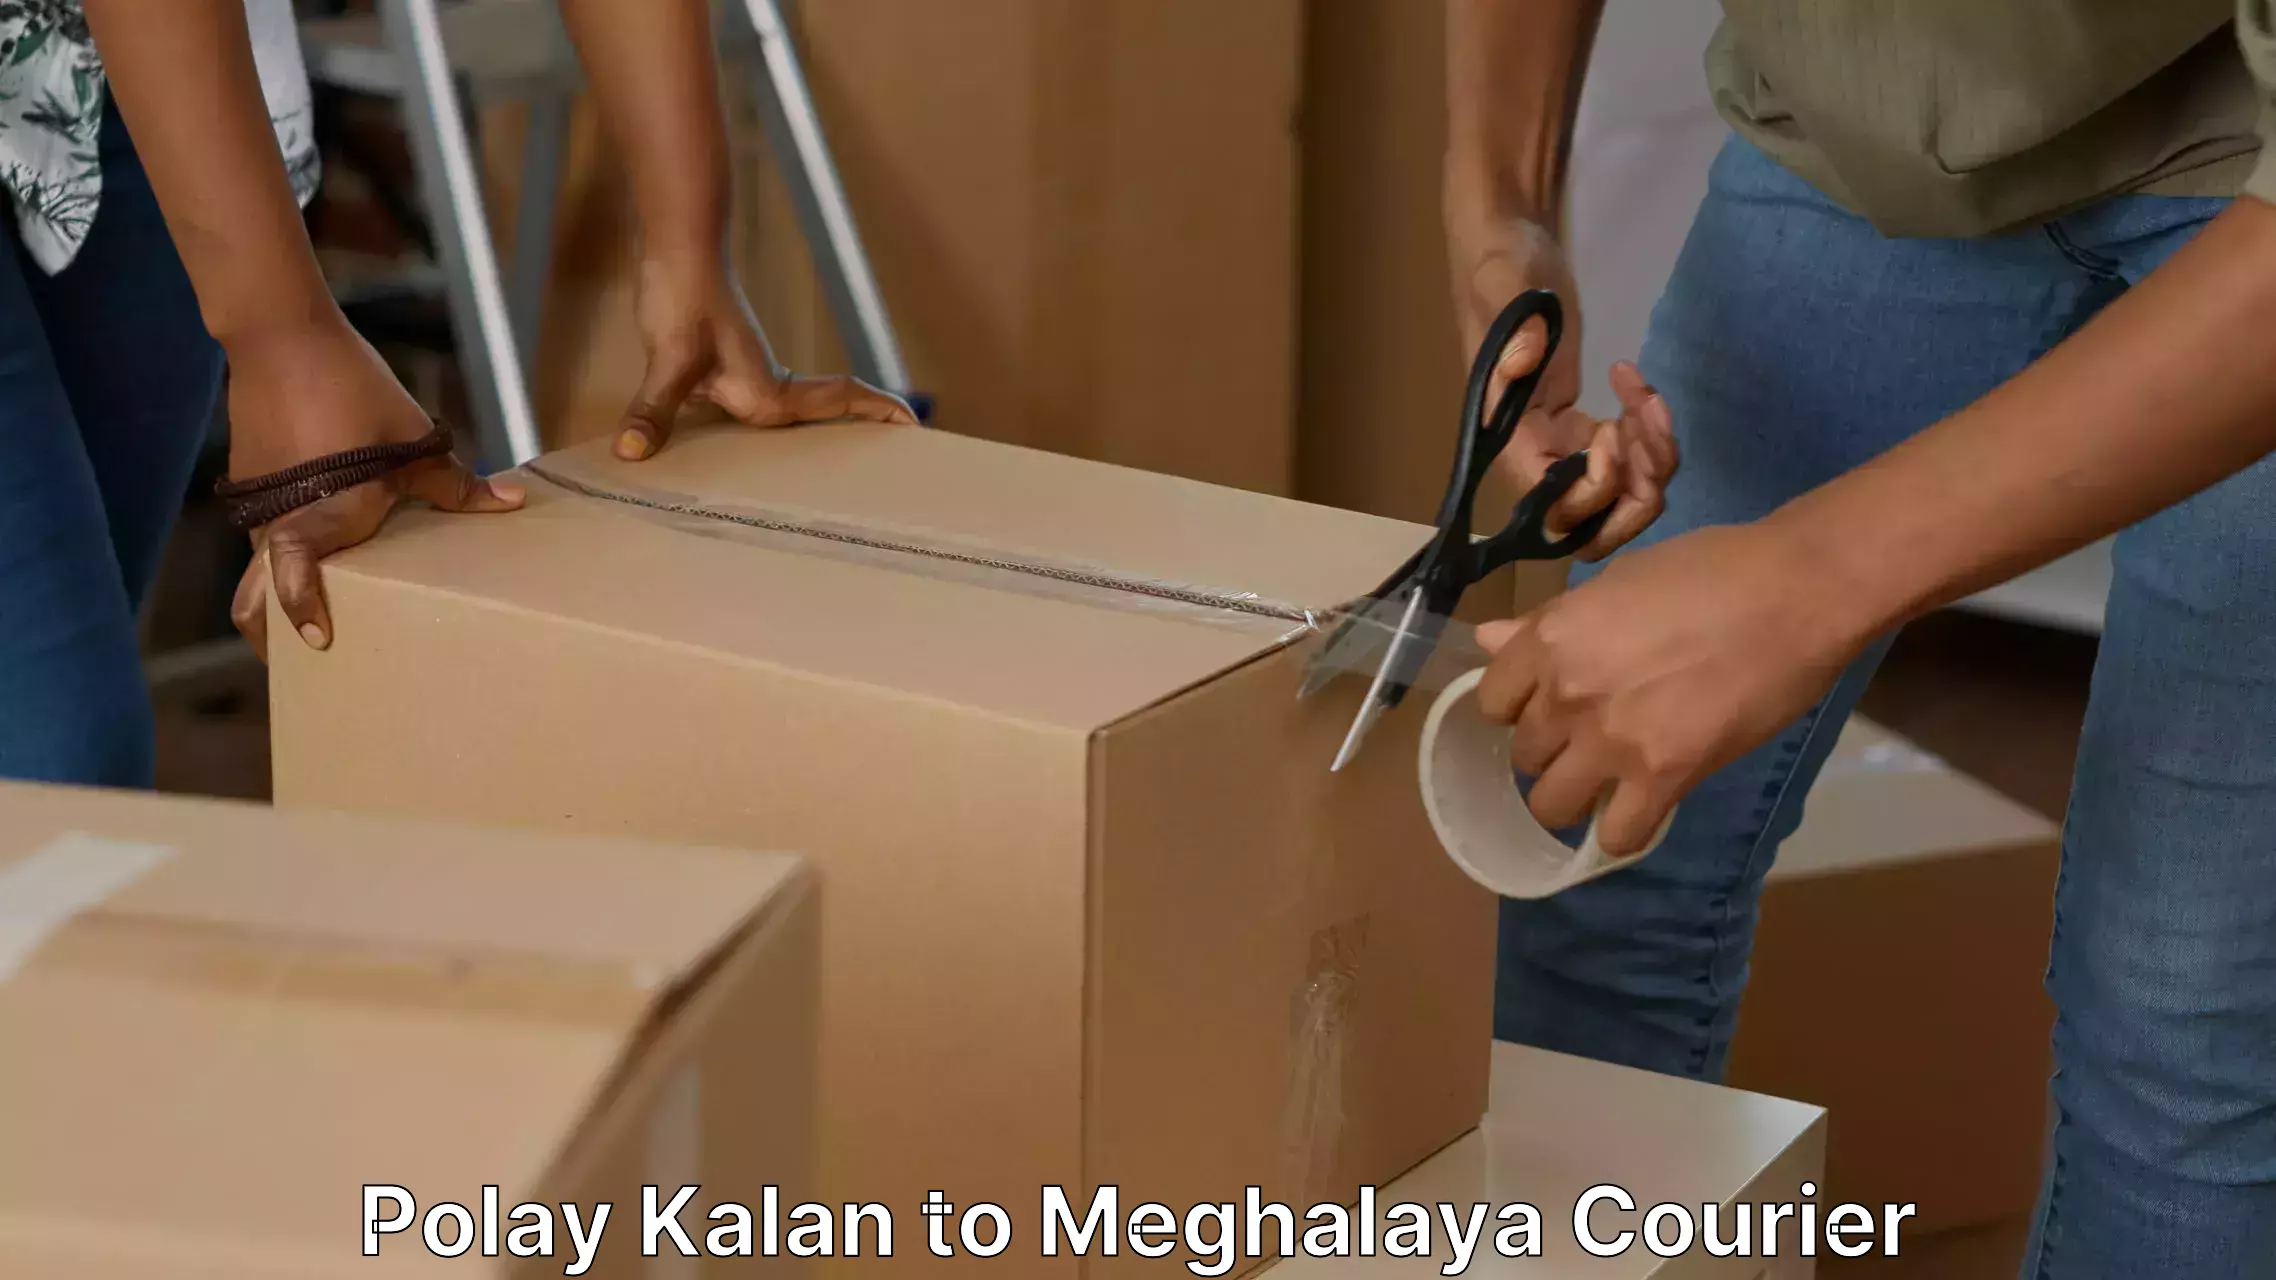 Furniture transport solutions Polay Kalan to Meghalaya